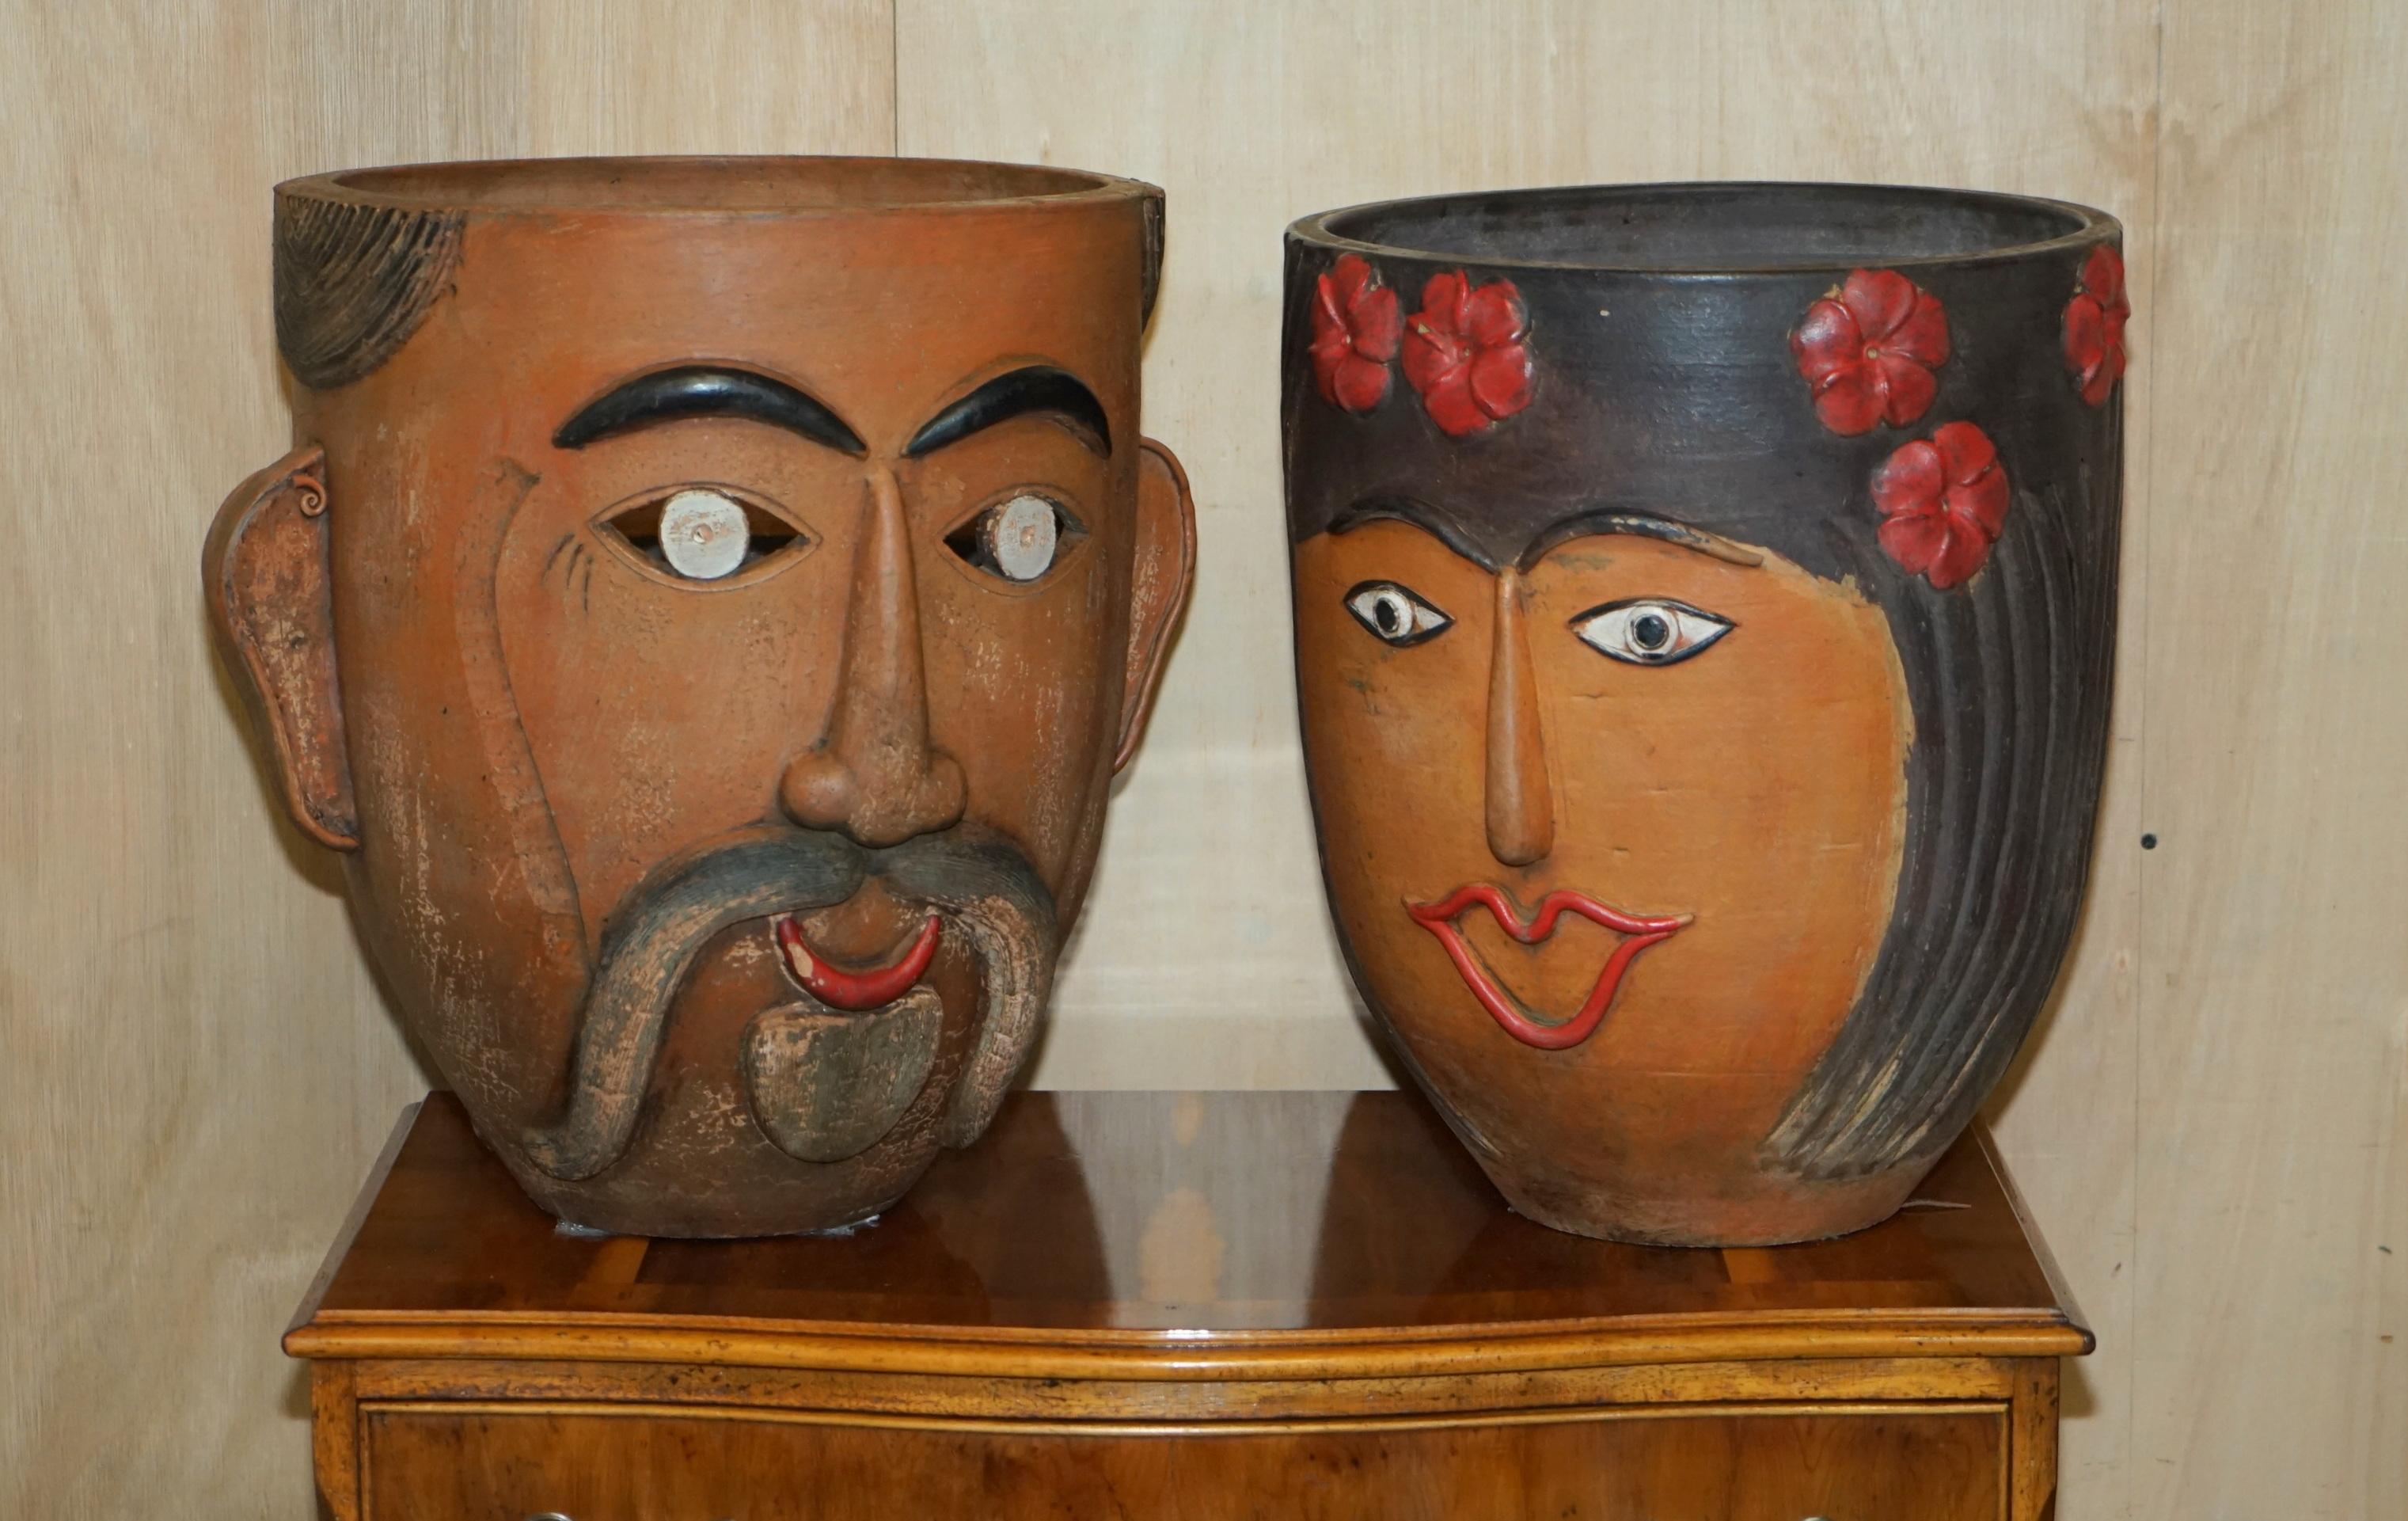 Nous sommes ravis d'offrir à la vente cette paire de pots en terre cuite mexicains rares et de collection, datant des années 1960, peints à la main.

Paire de pots à plantes d'art populaire mexicain, de très bonne facture et très décoratifs. Ils